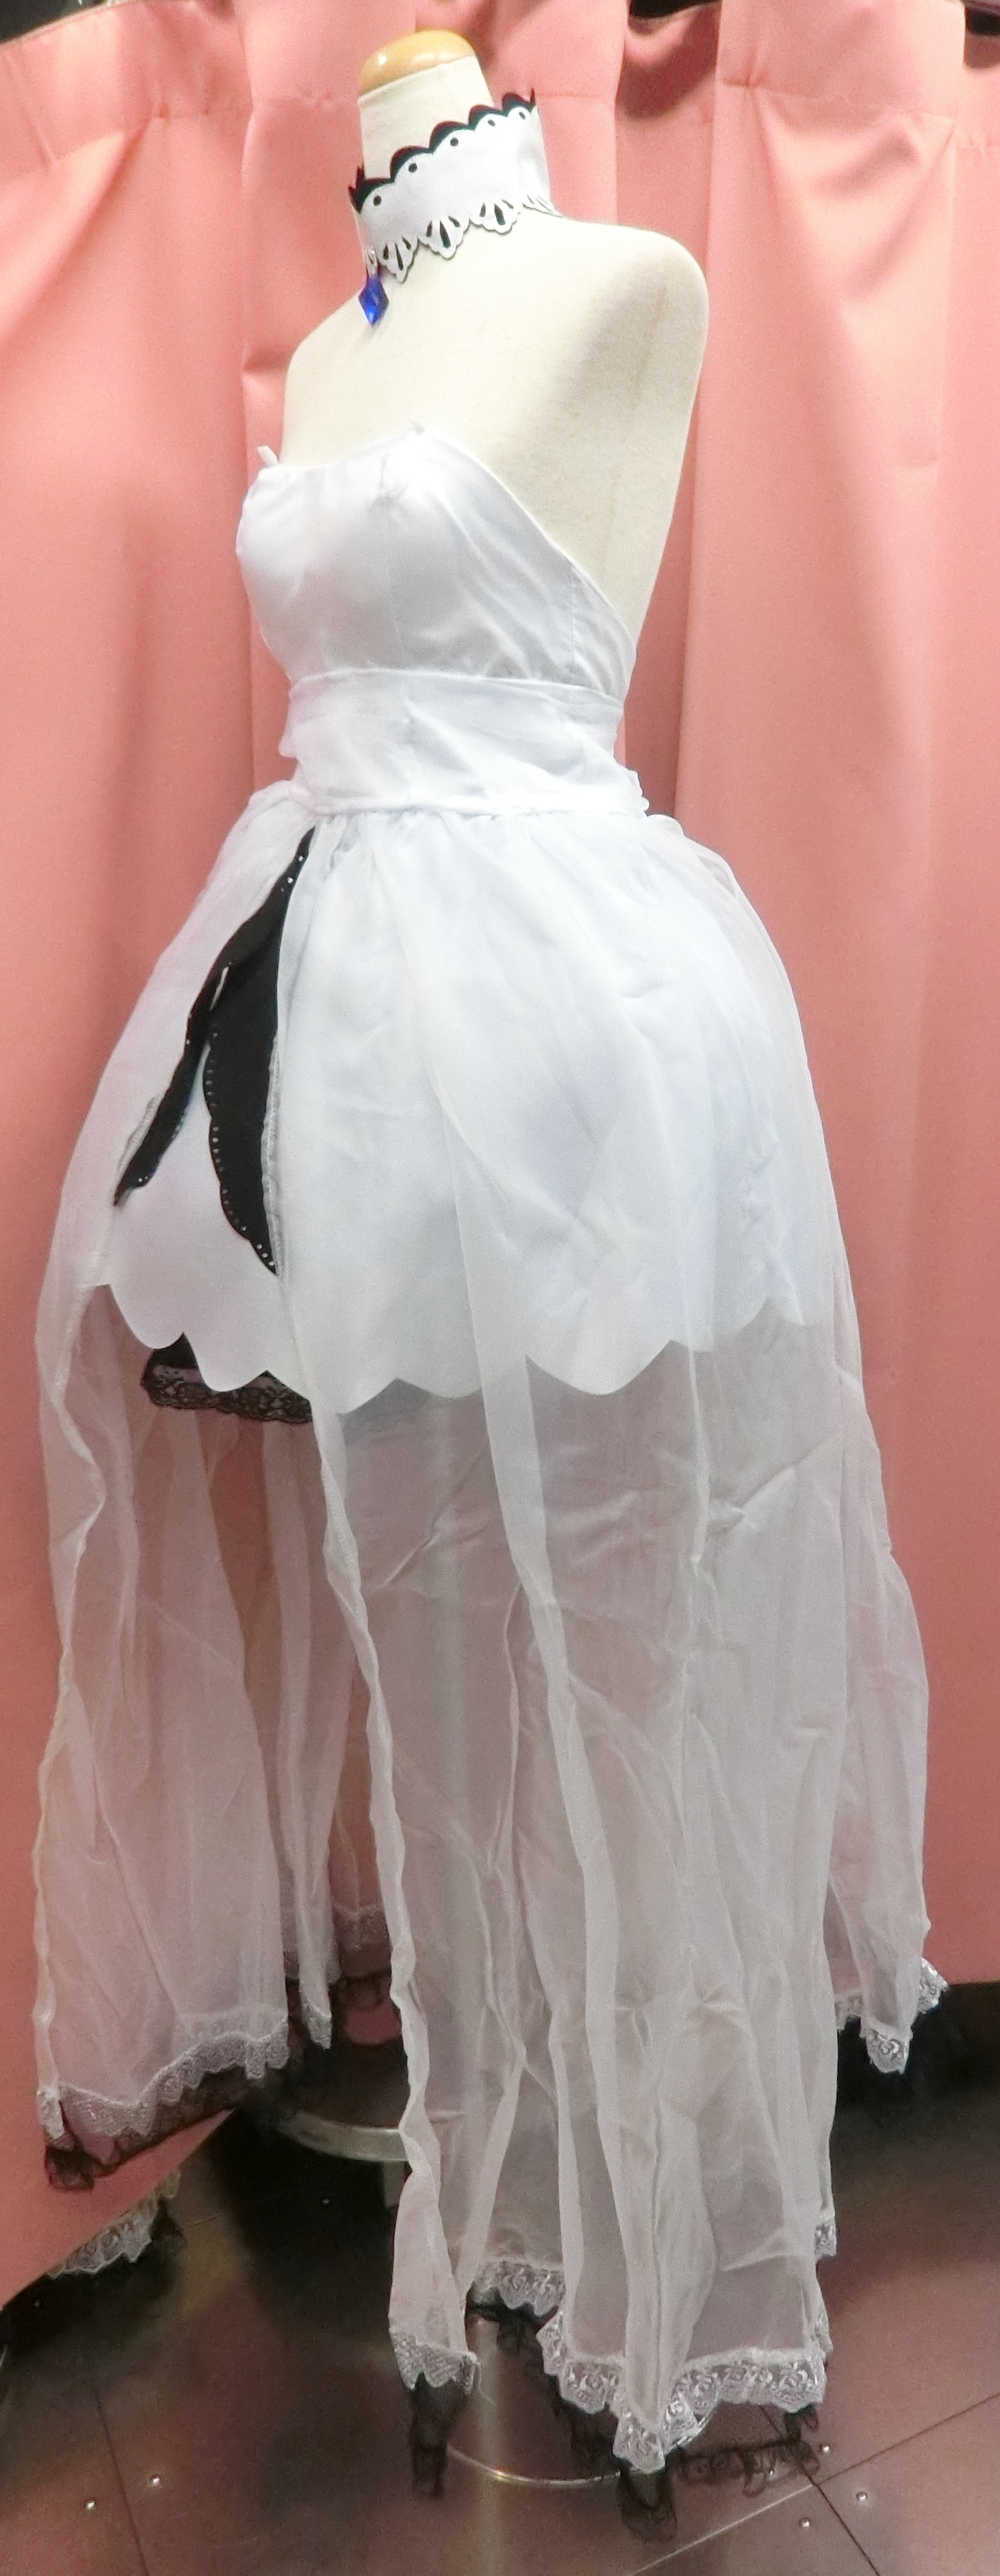 アズールレーン イラストリアス 女性Mサイズ サークル製・未着用品 コスプレ衣装